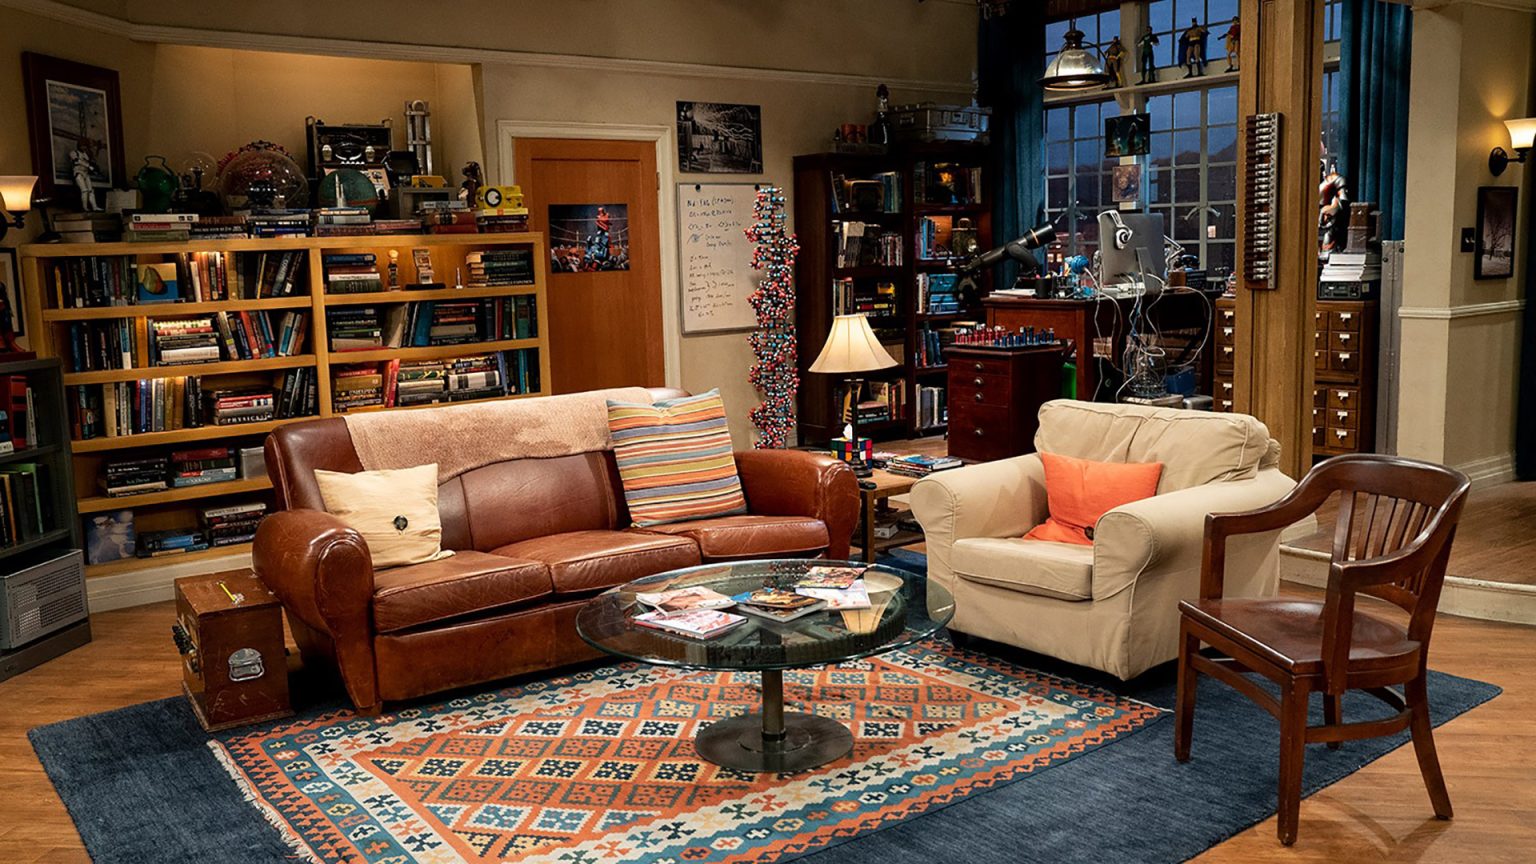 The Big Bang Theory Living Room Furnishings